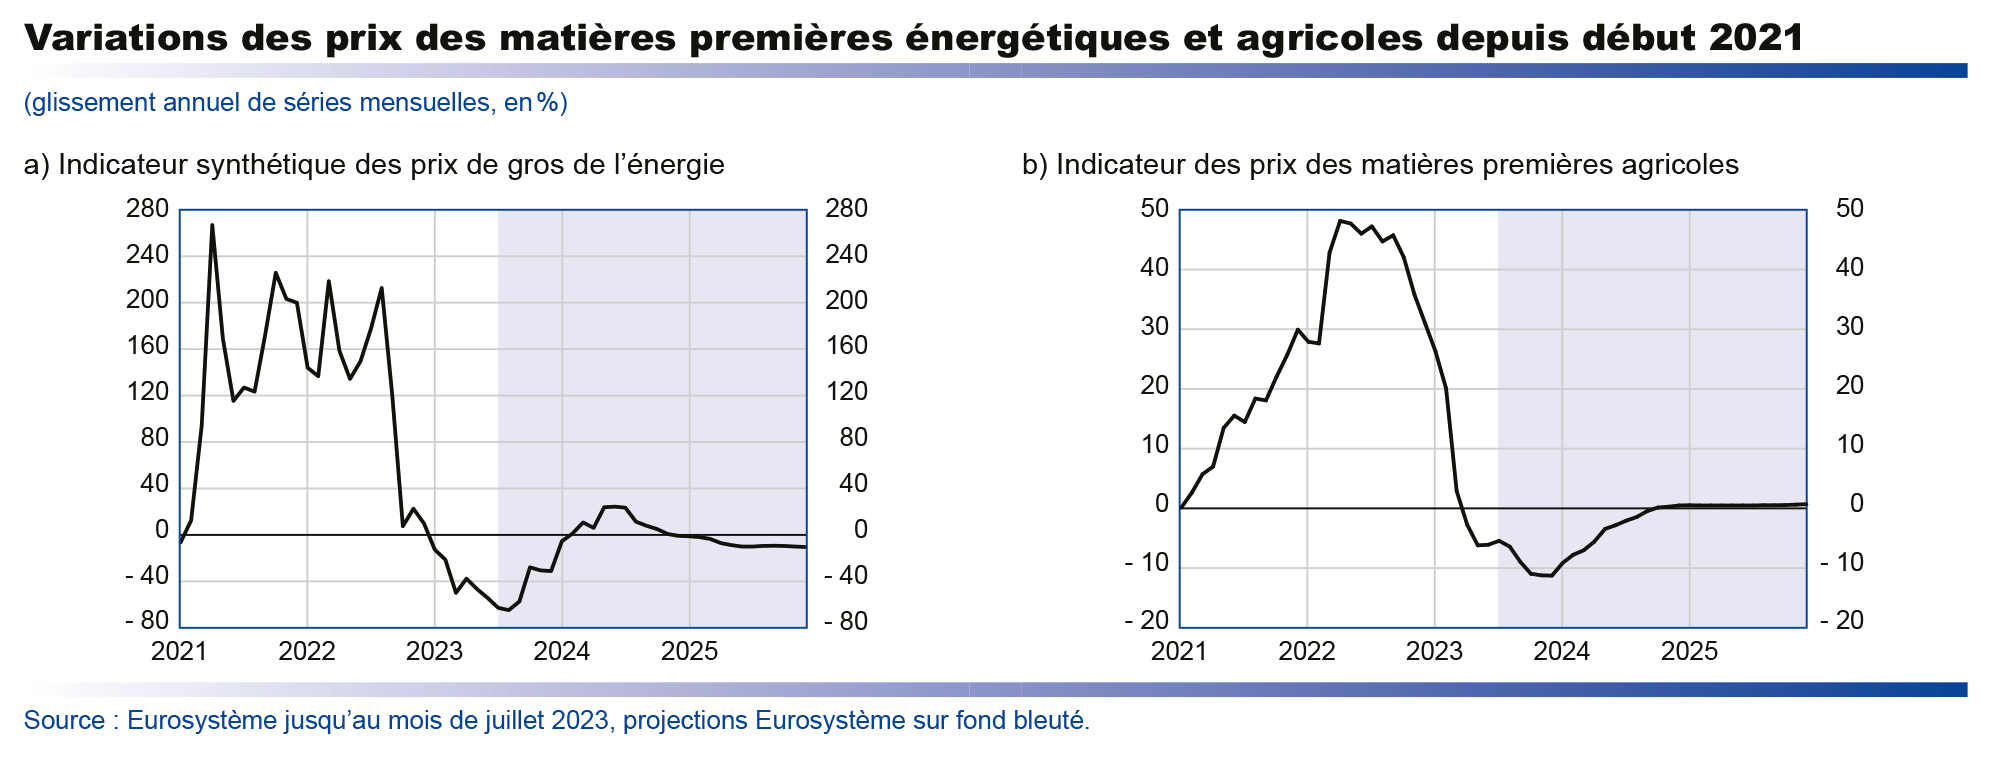 Projections macroéconomique septembre 2023 - Variations des prix des matières premières énergétiques et agricoles depuis début 2021